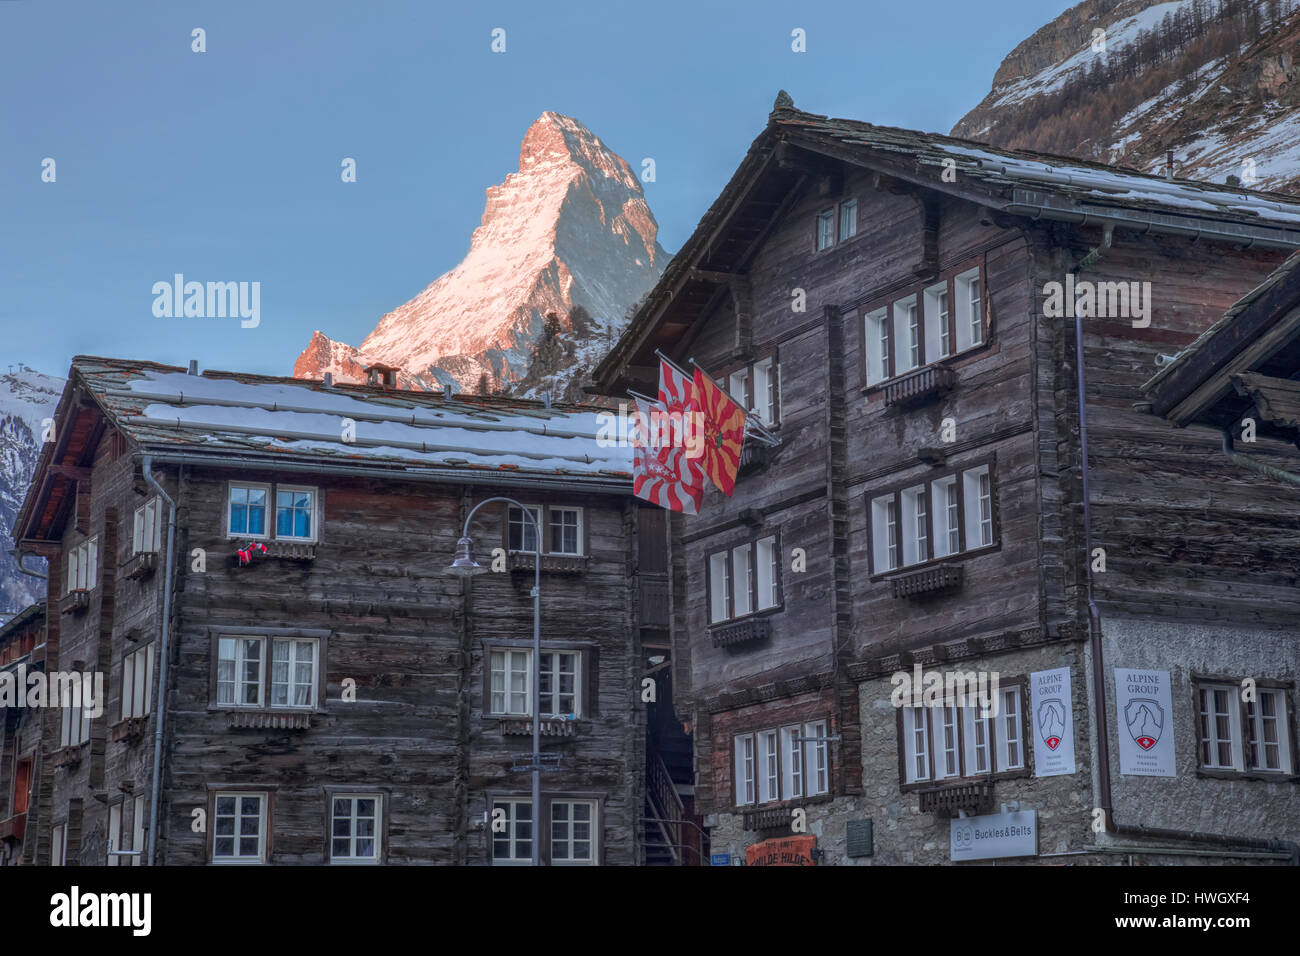 Matterhorn, Zermatt, Valais, Suisse, Europe Banque D'Images